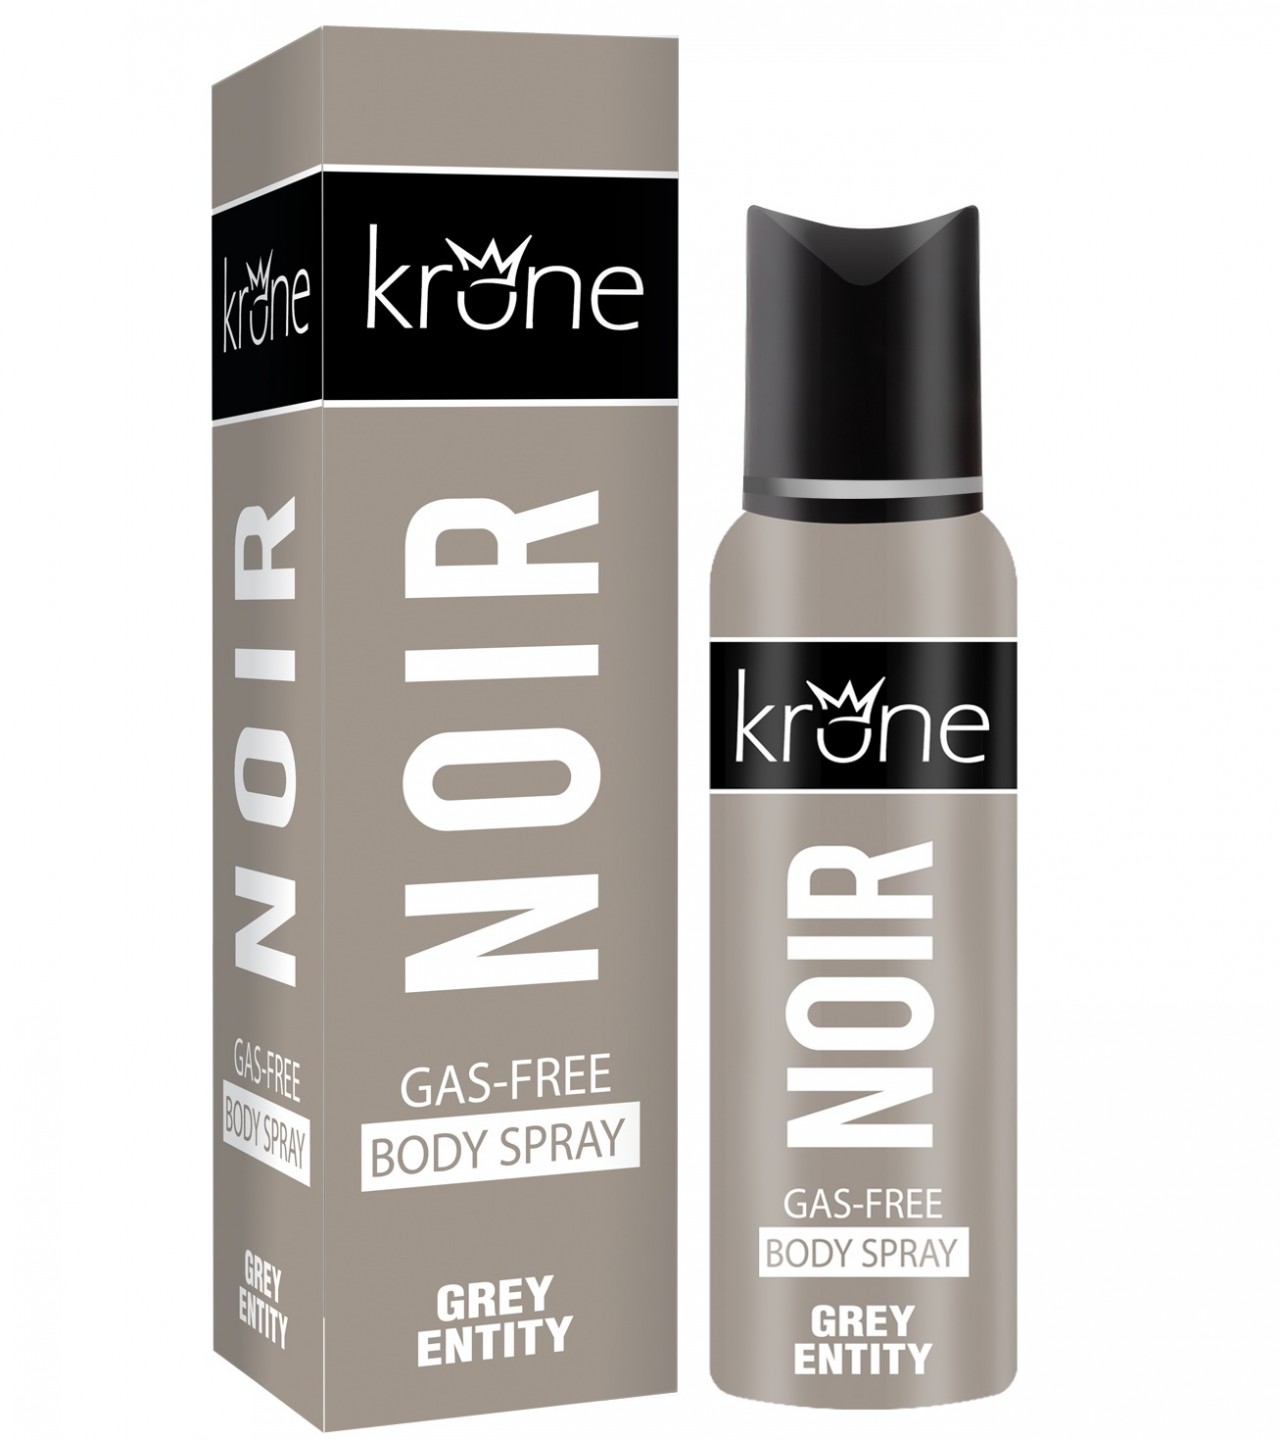 Krone Noir Grey Entity Perfume Body Spray - 120 ml